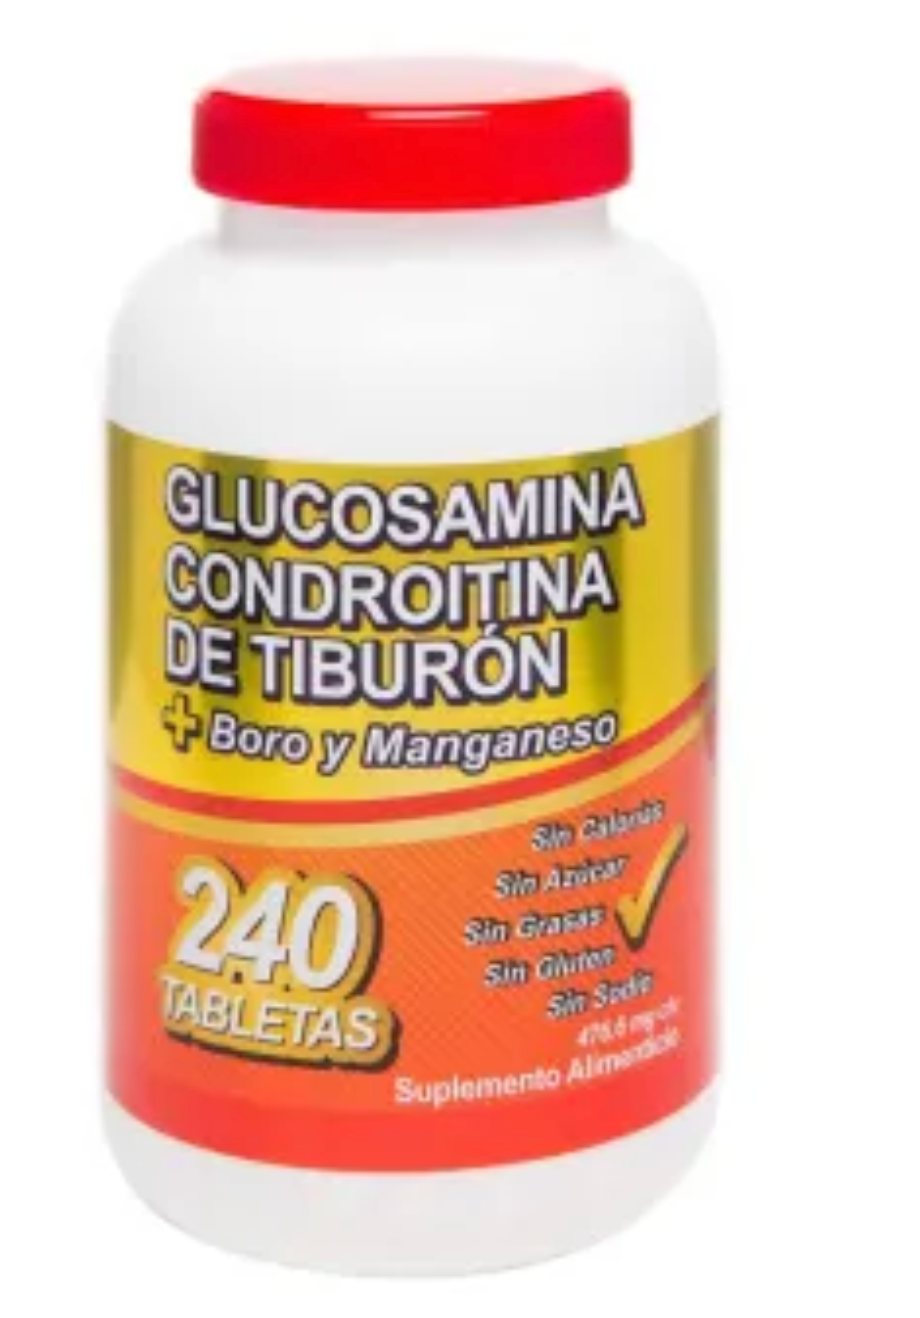 Glucosamina y Condroitina Just For You de Tiburón 240T - ZK